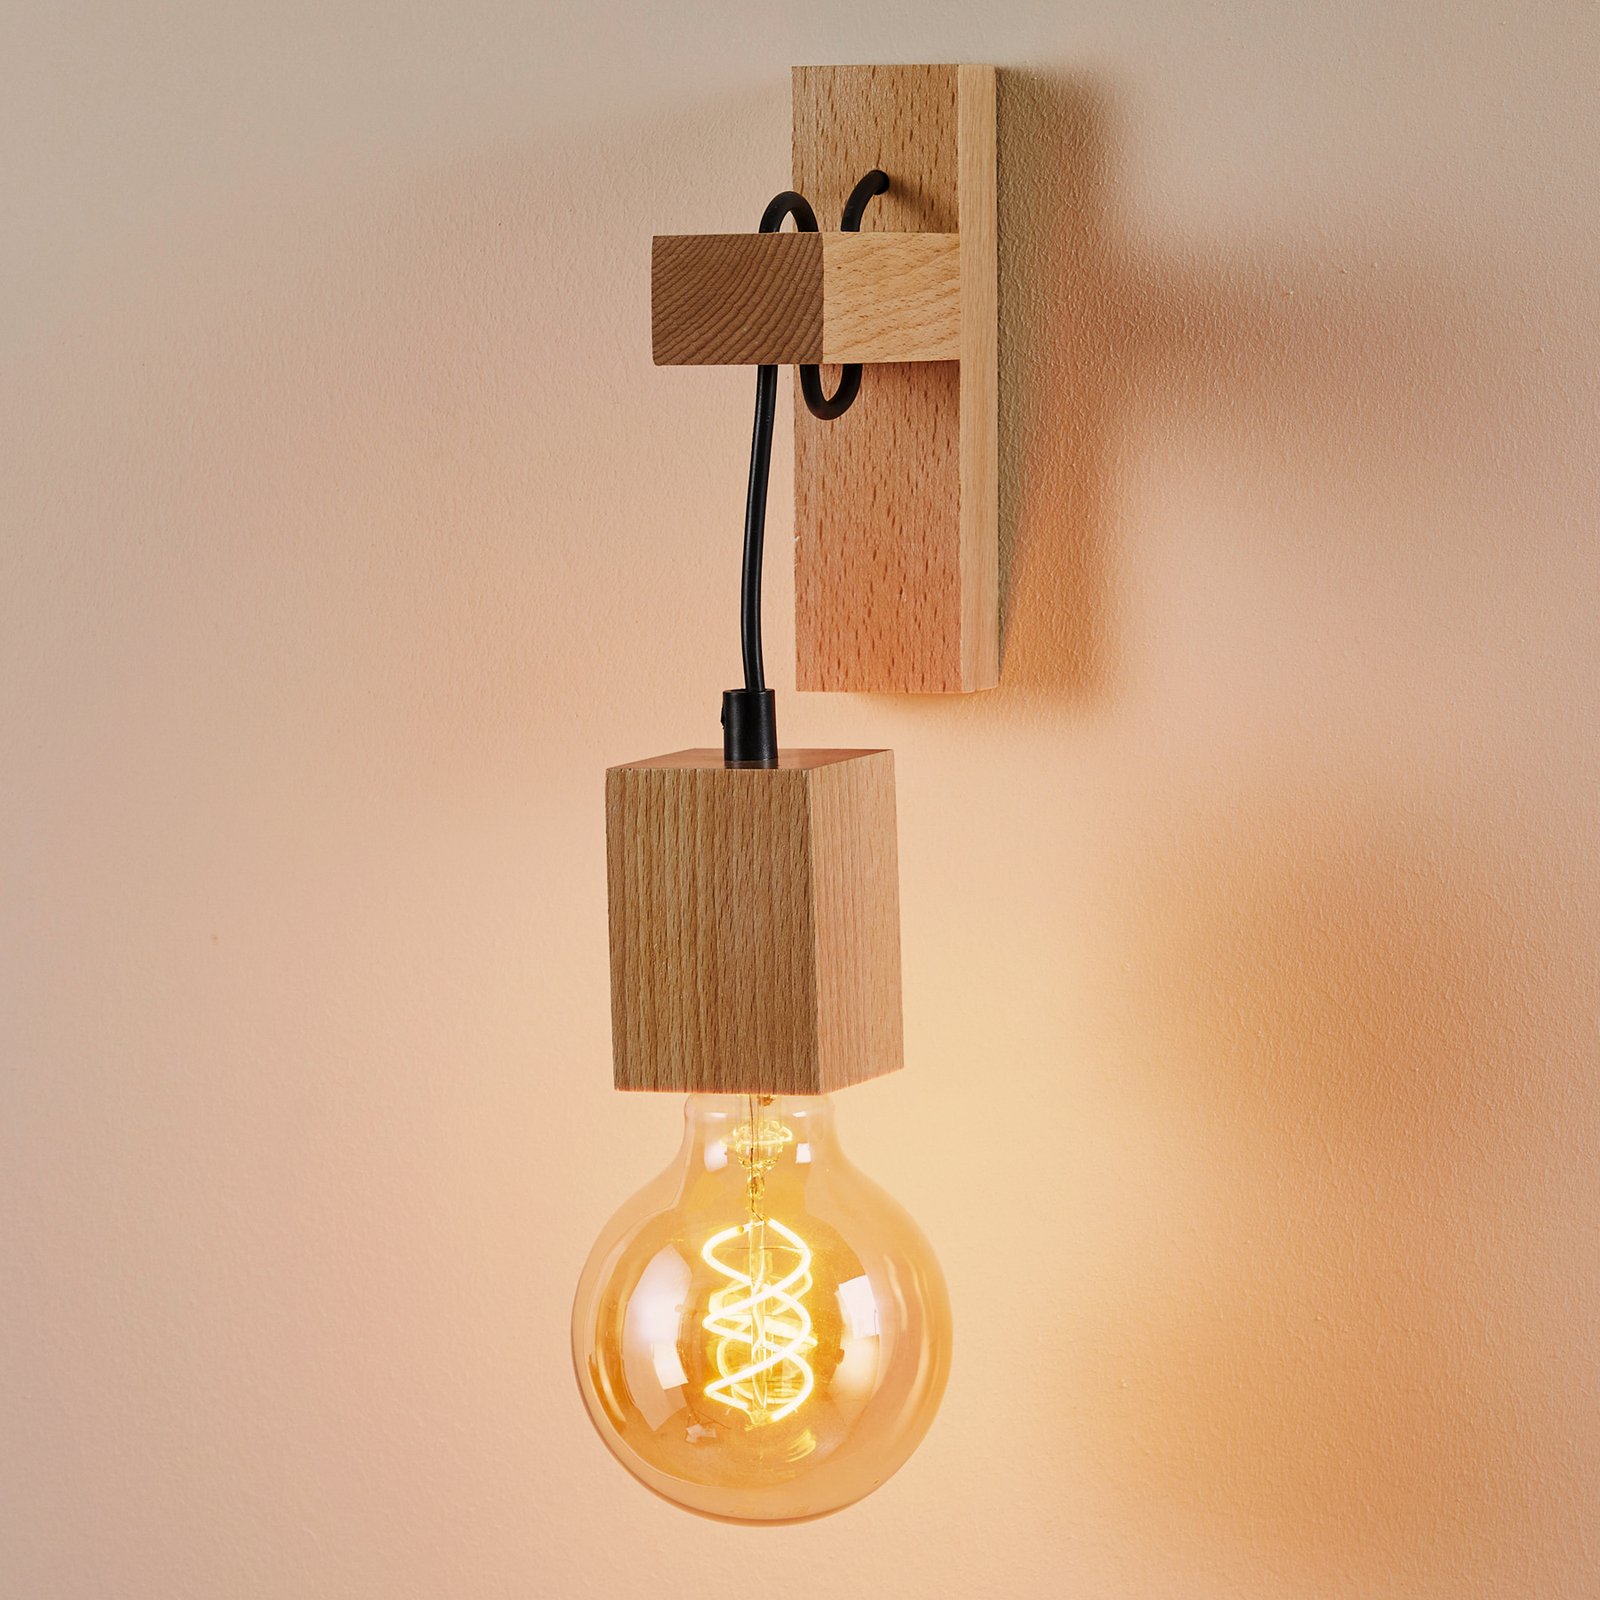 Jack wall light made of light wood, angular